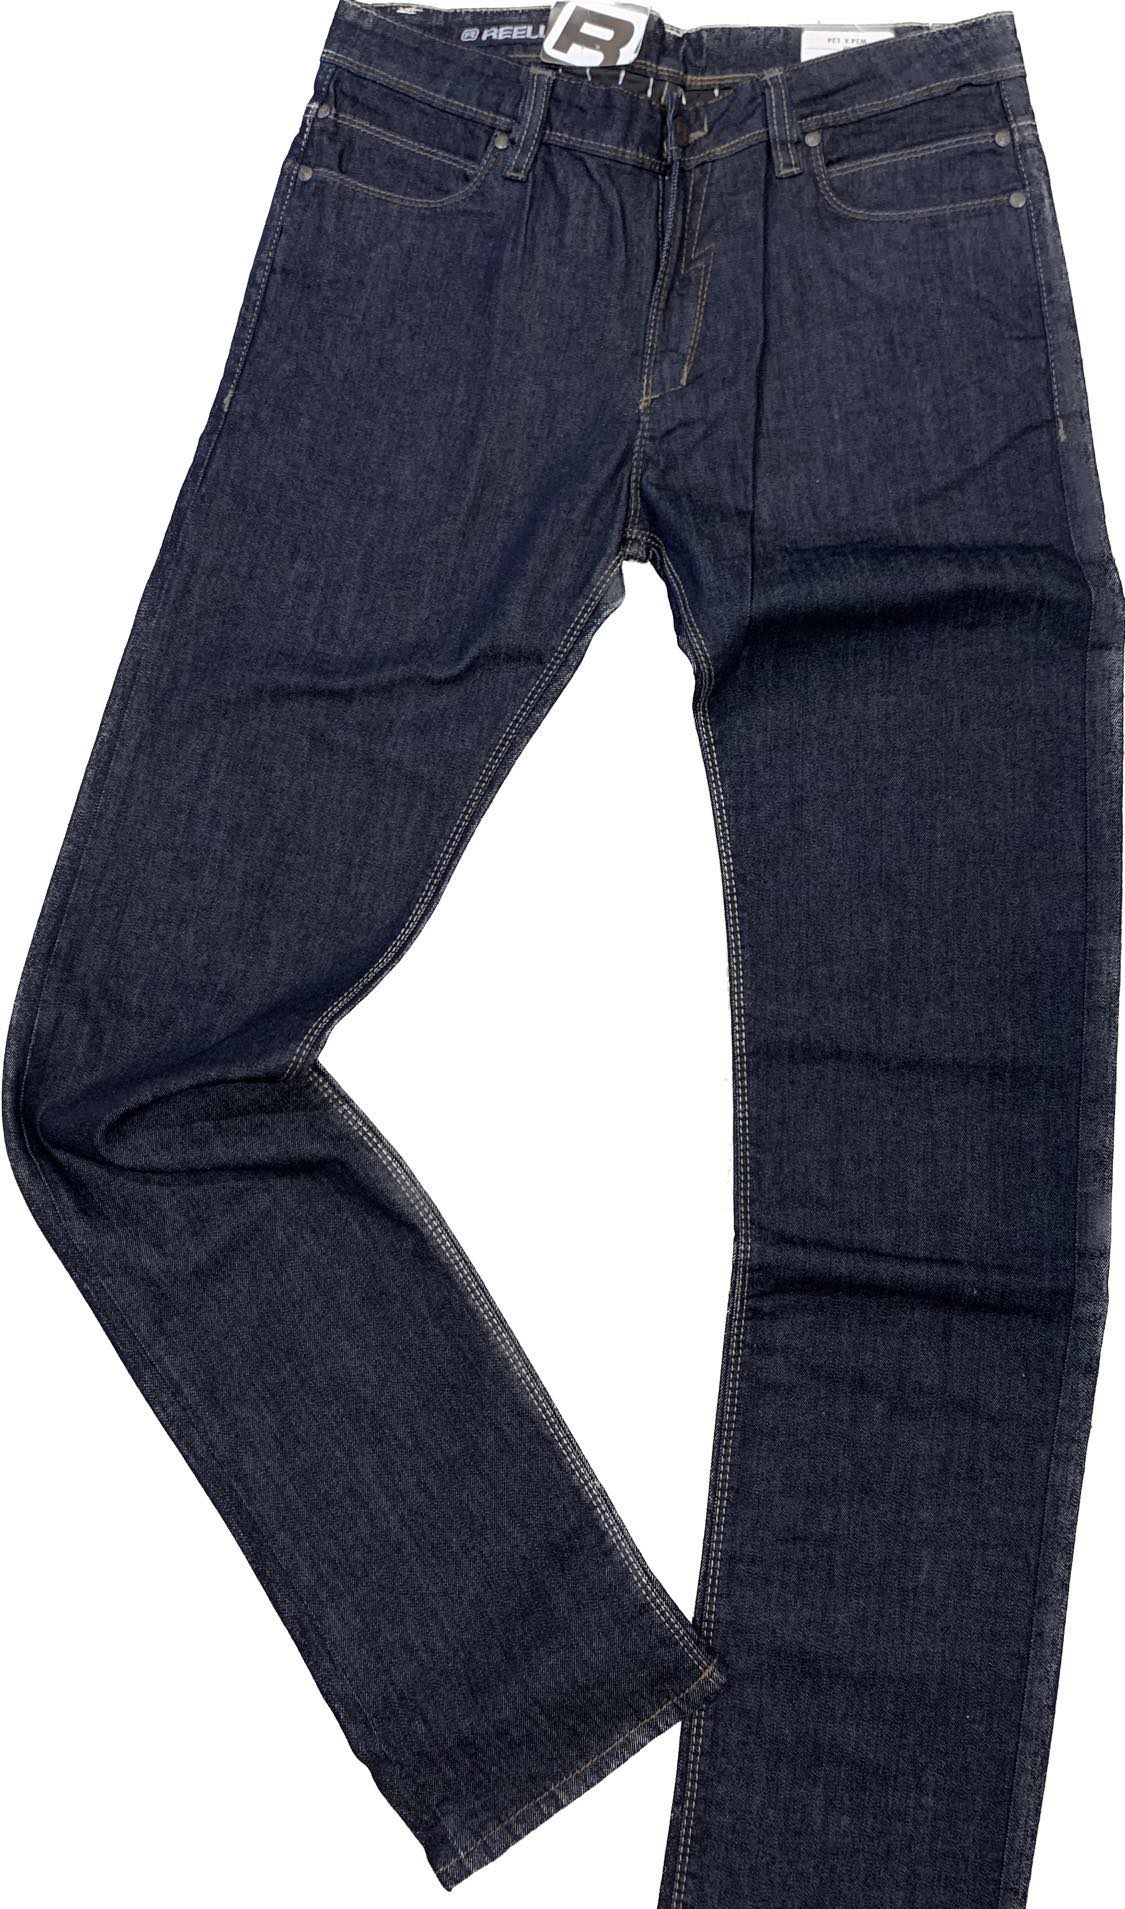 Reell Skin Jeans - blue